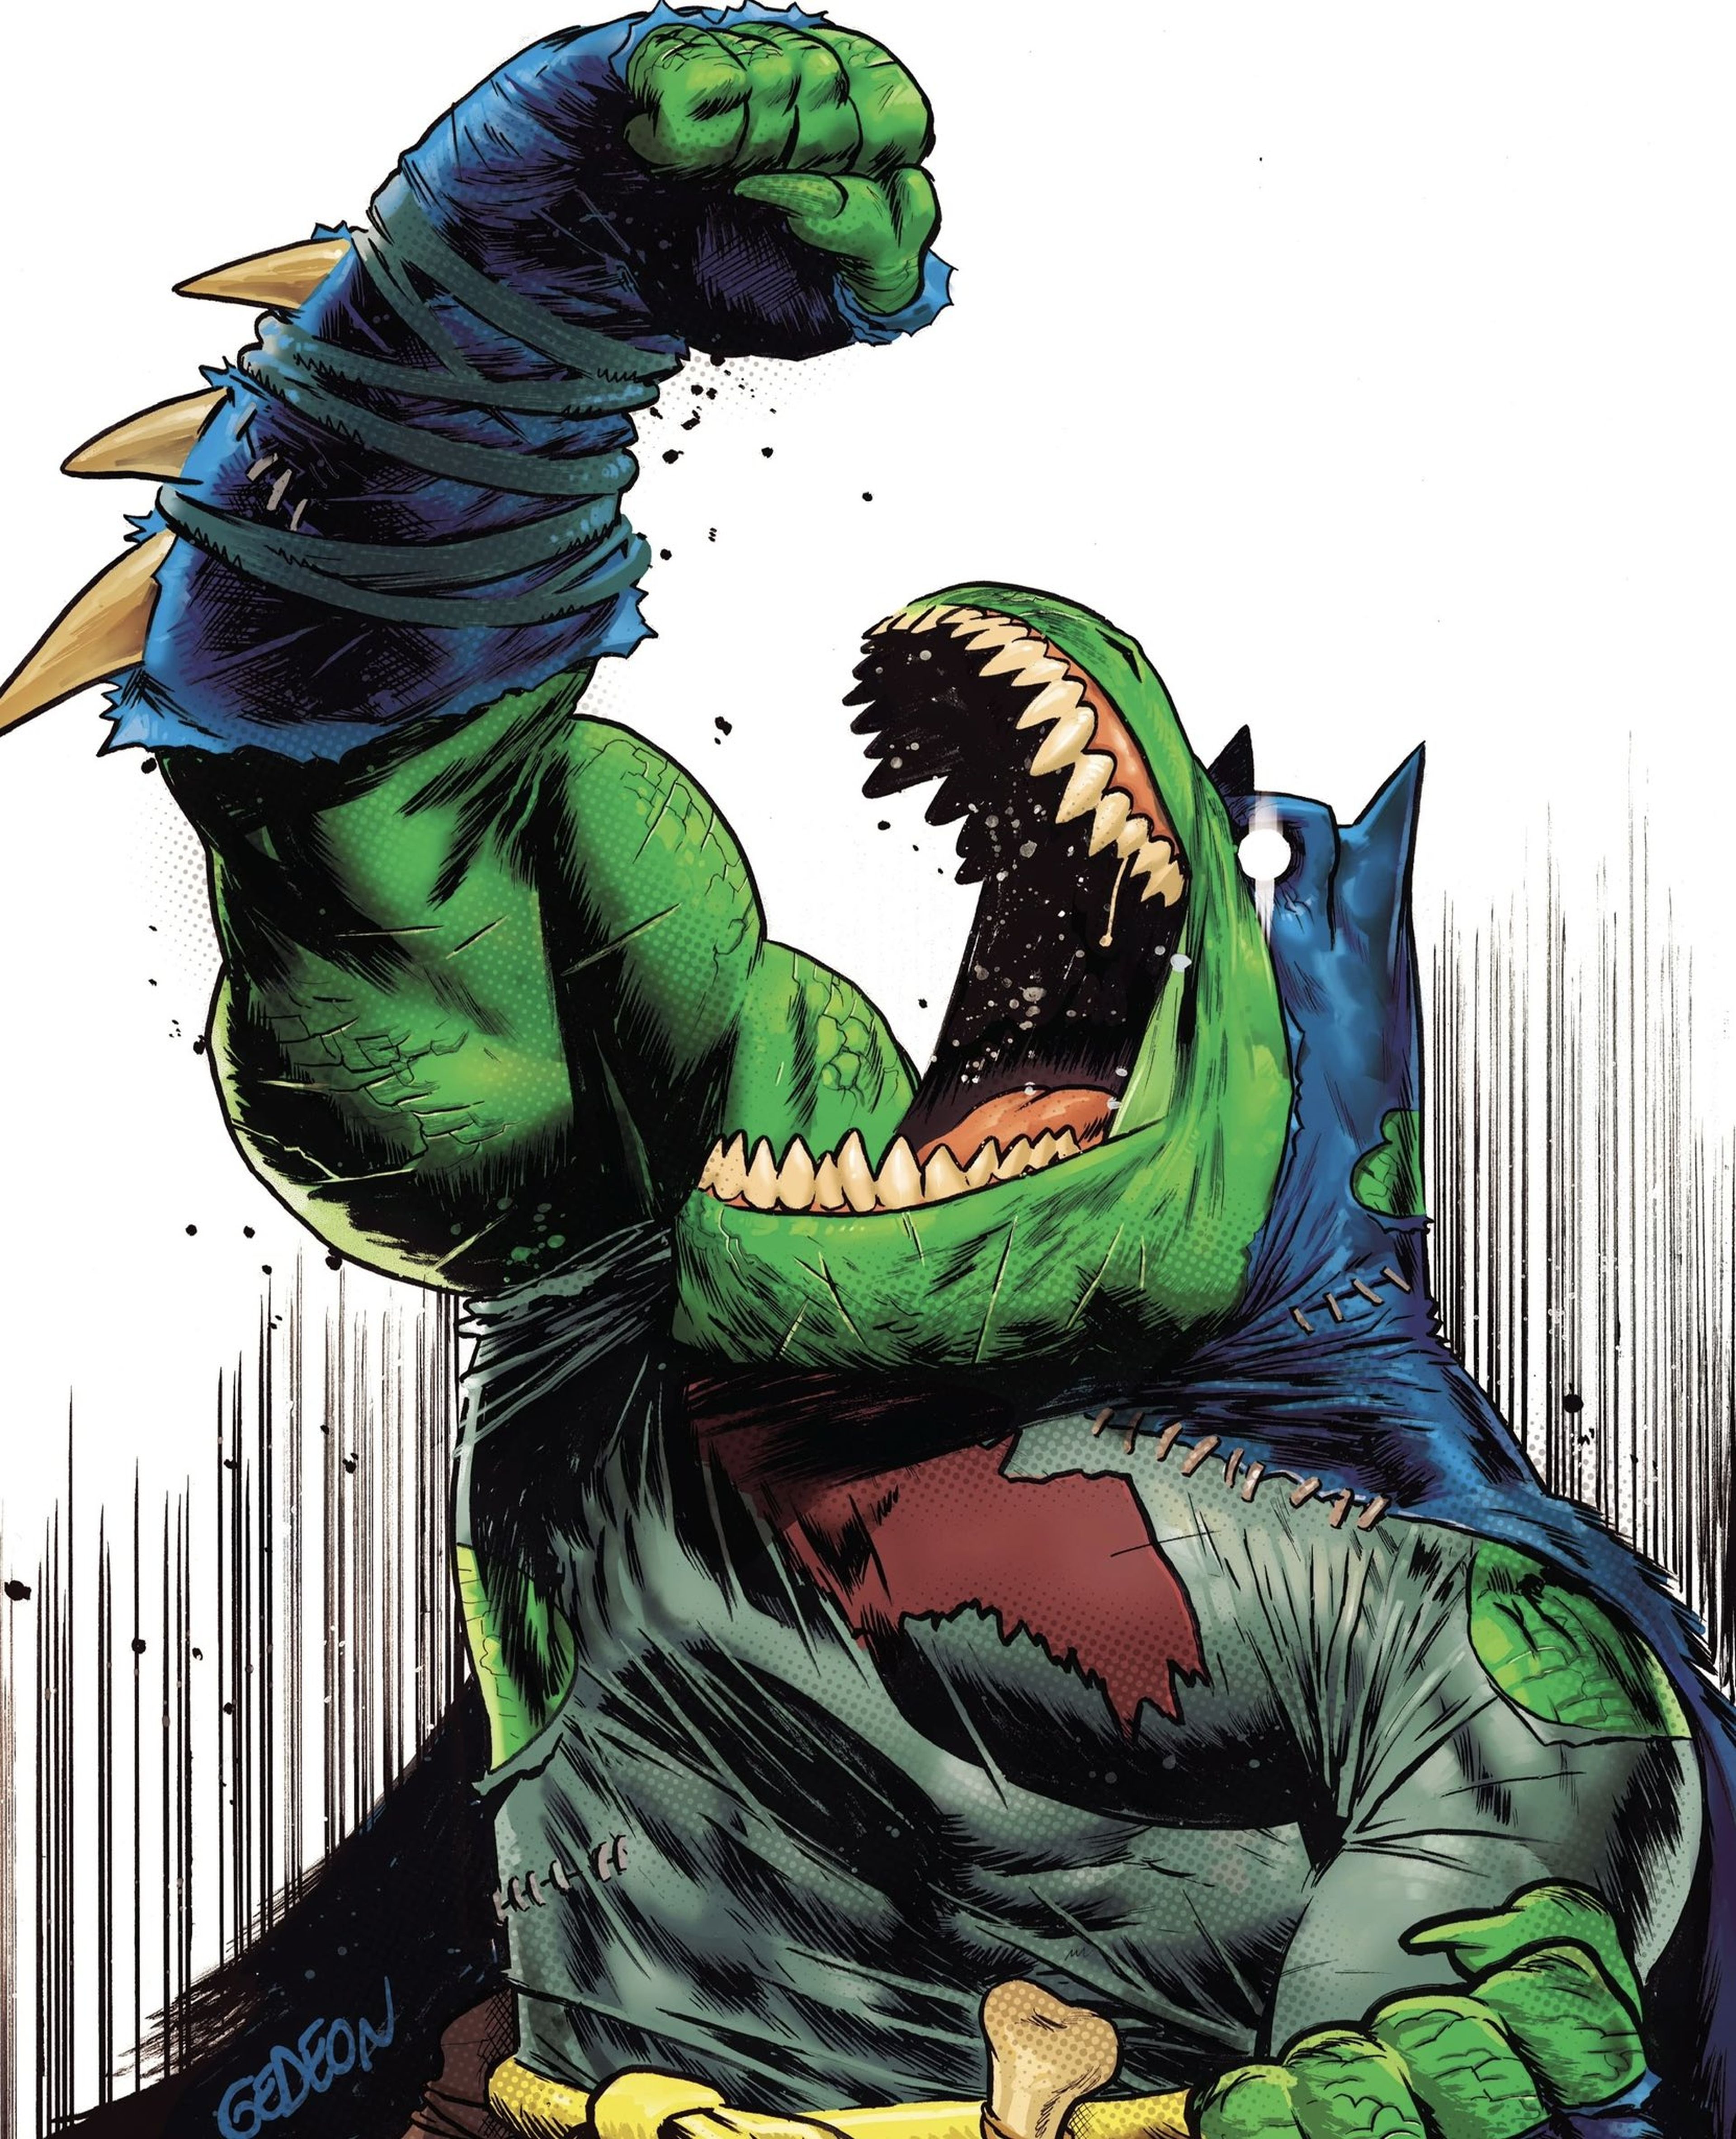 La fiebre de los dinosaurios regresa con The Jurassic League, la nueva película de animación de DC producida por James Gunn